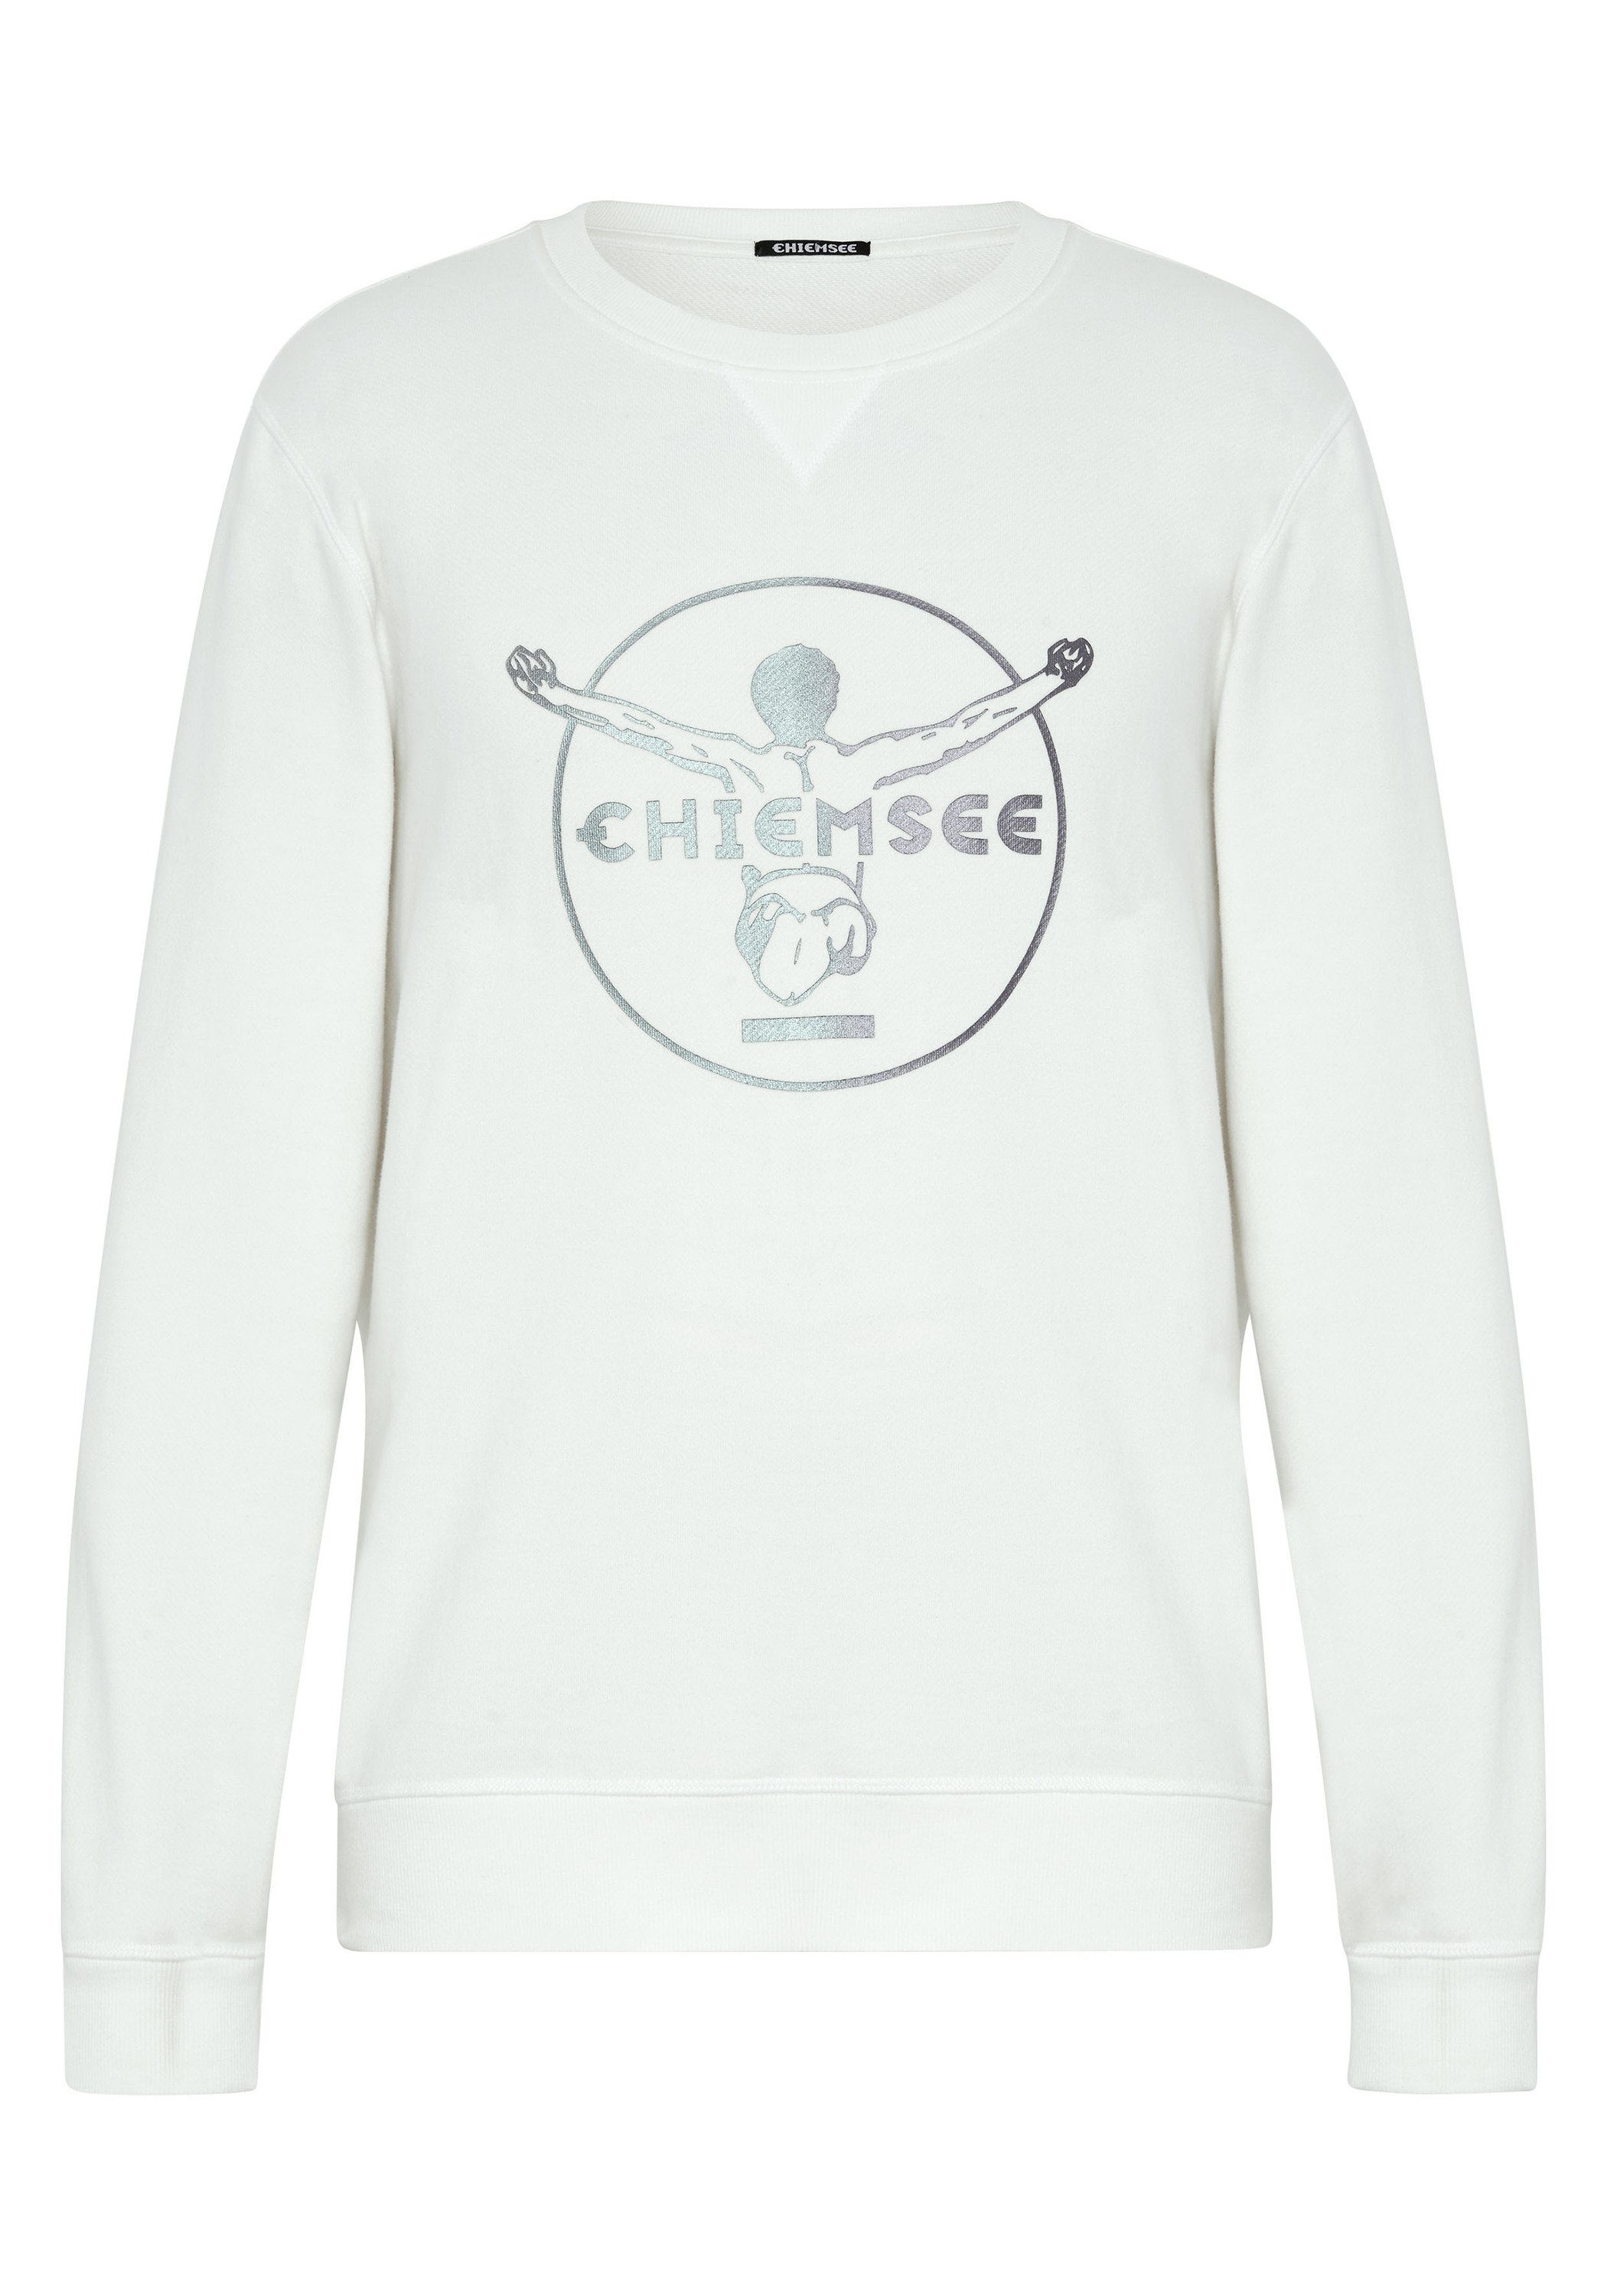 Chiemsee Sweatshirt Sweater im Label-Look 1 weiß